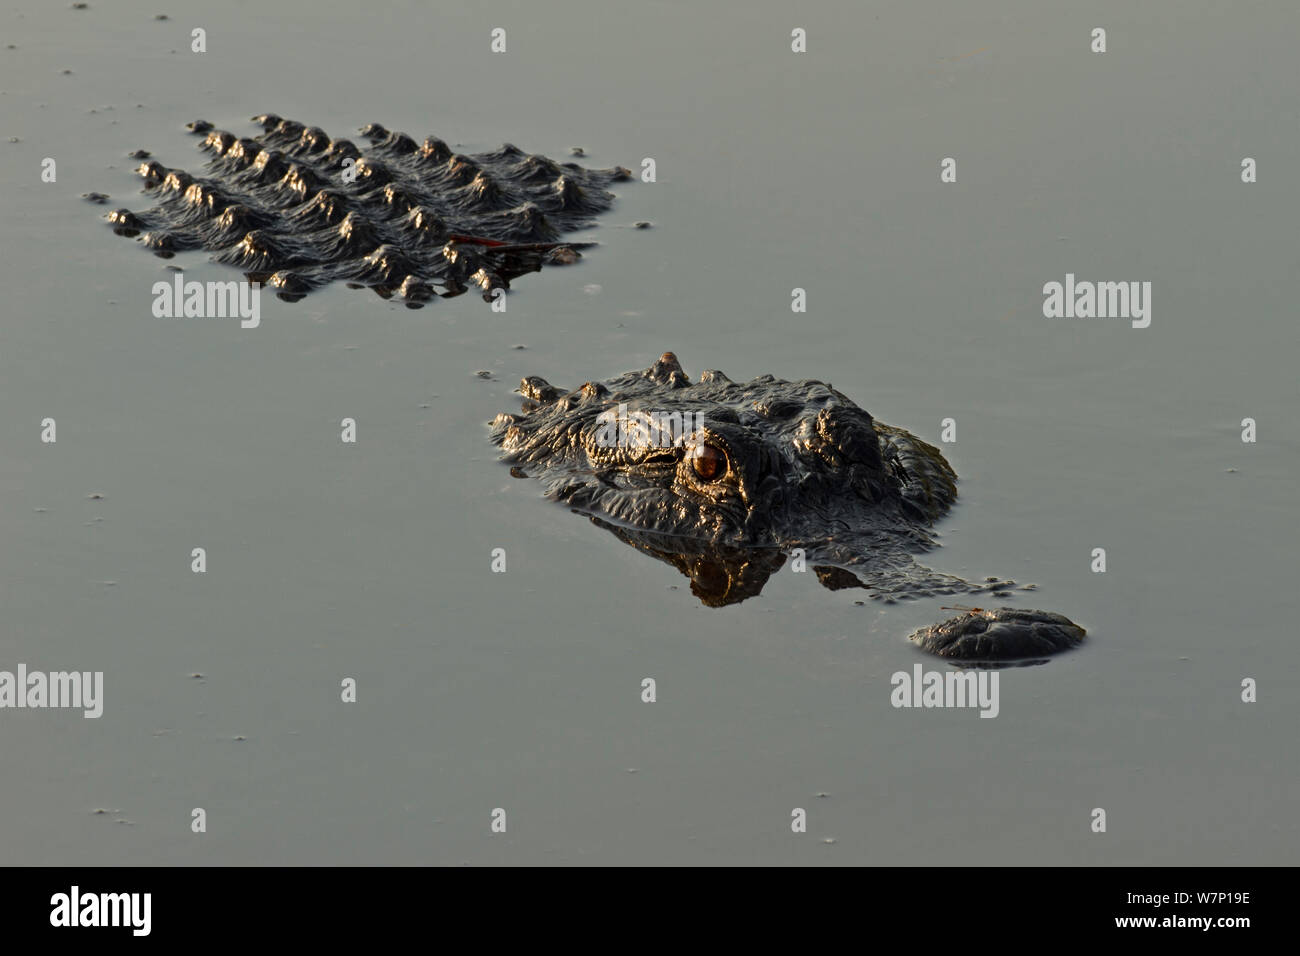 American alligator (Alligator mississippiensis) an der Wasseroberfläche. Everglades, Florida, USA. Stockfoto